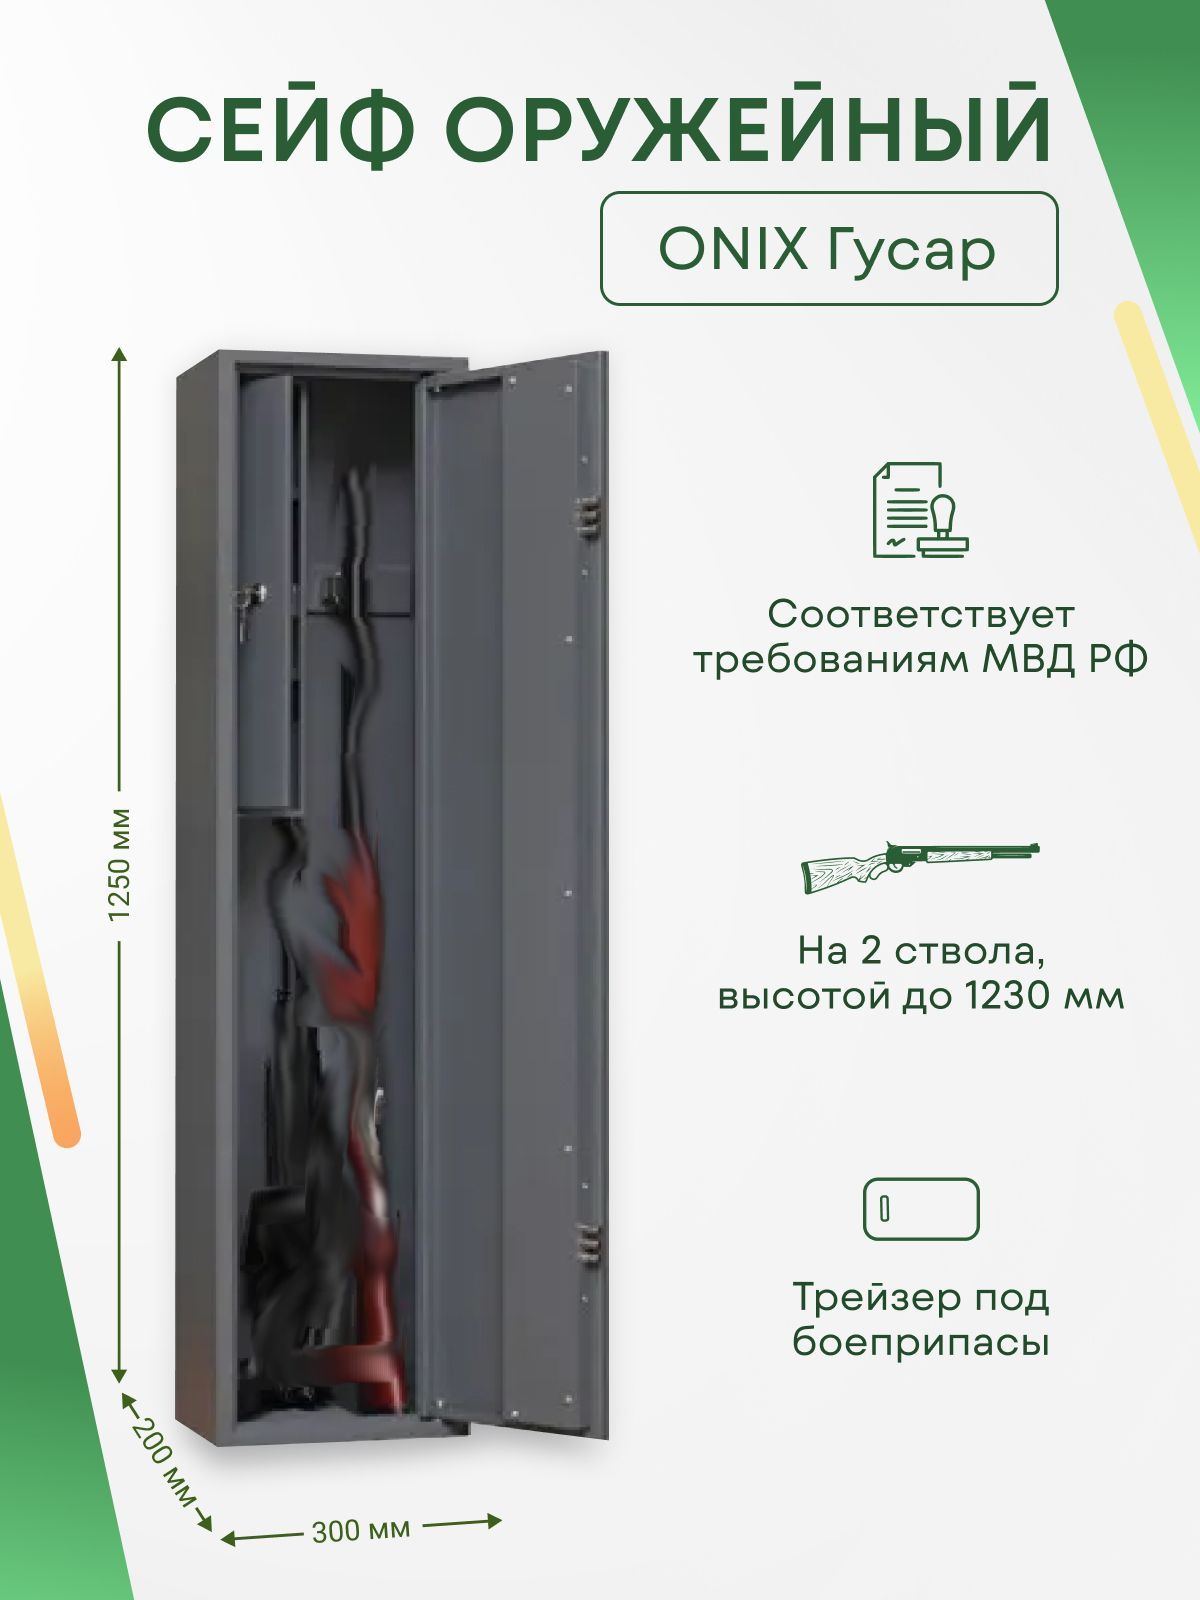 Шкаф оружейный onix дуплет